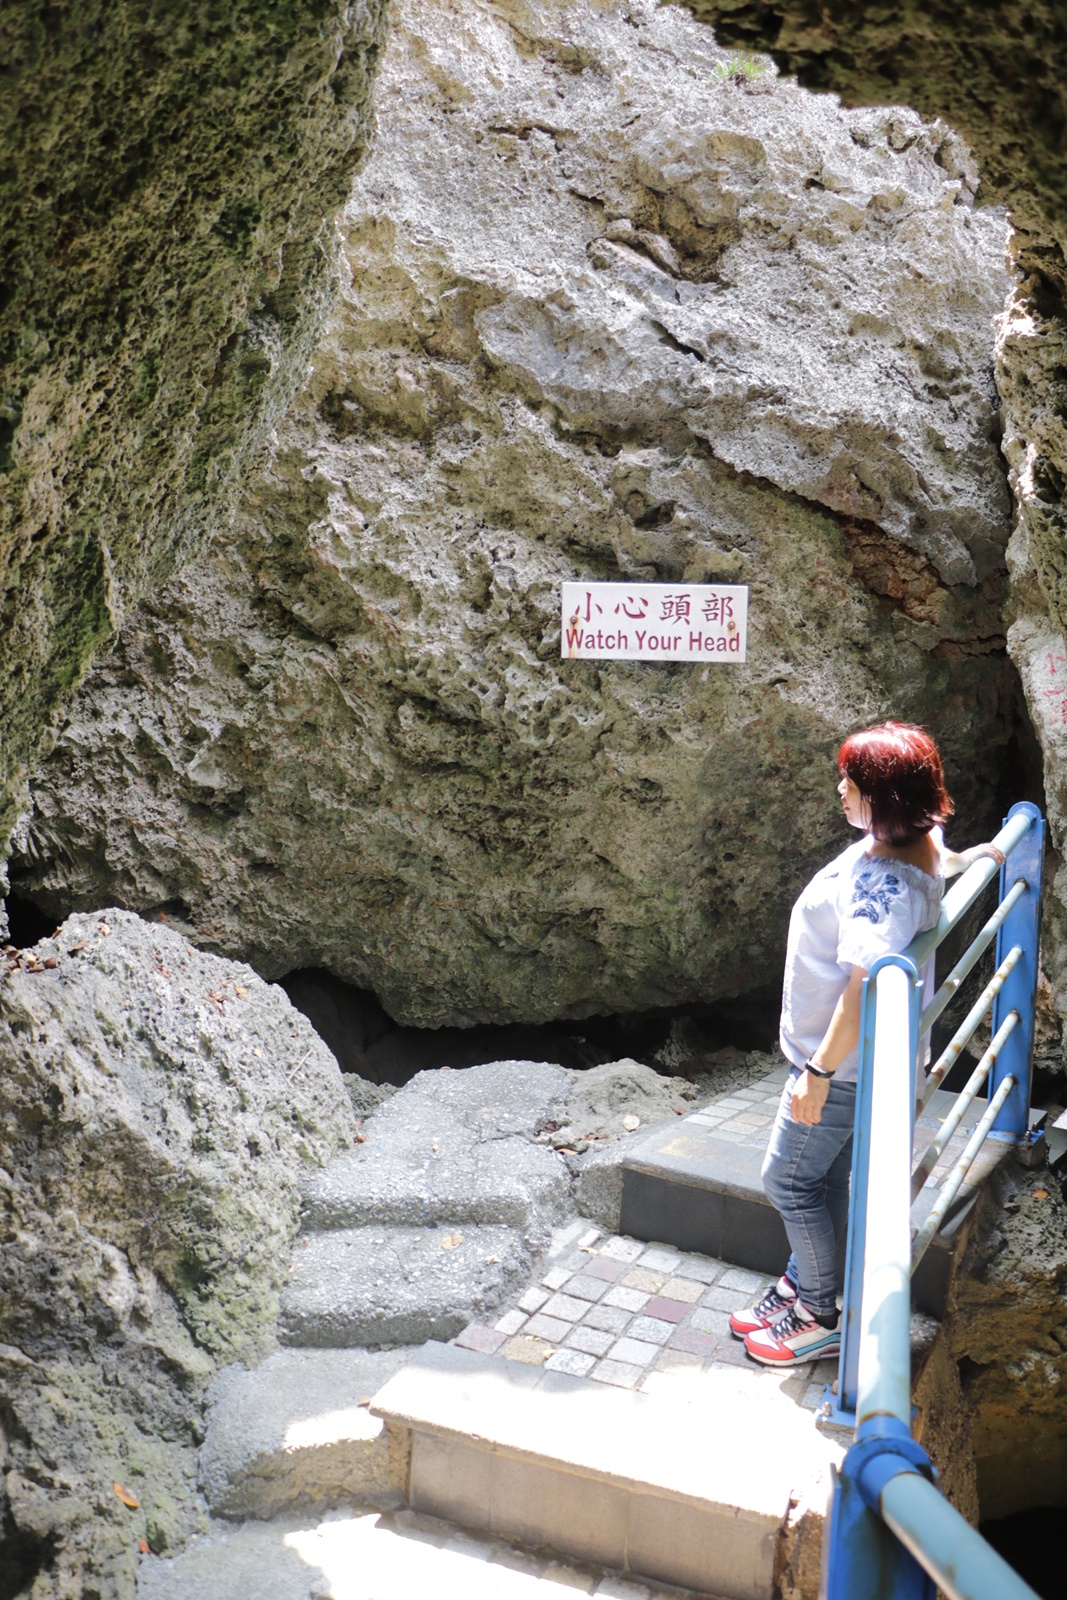 小琉球景點。烏鬼洞 洞穴之旅 珊瑚礁岩洞穴探險、還可以通往礁岩海岸 欣賞一望無際海景!!